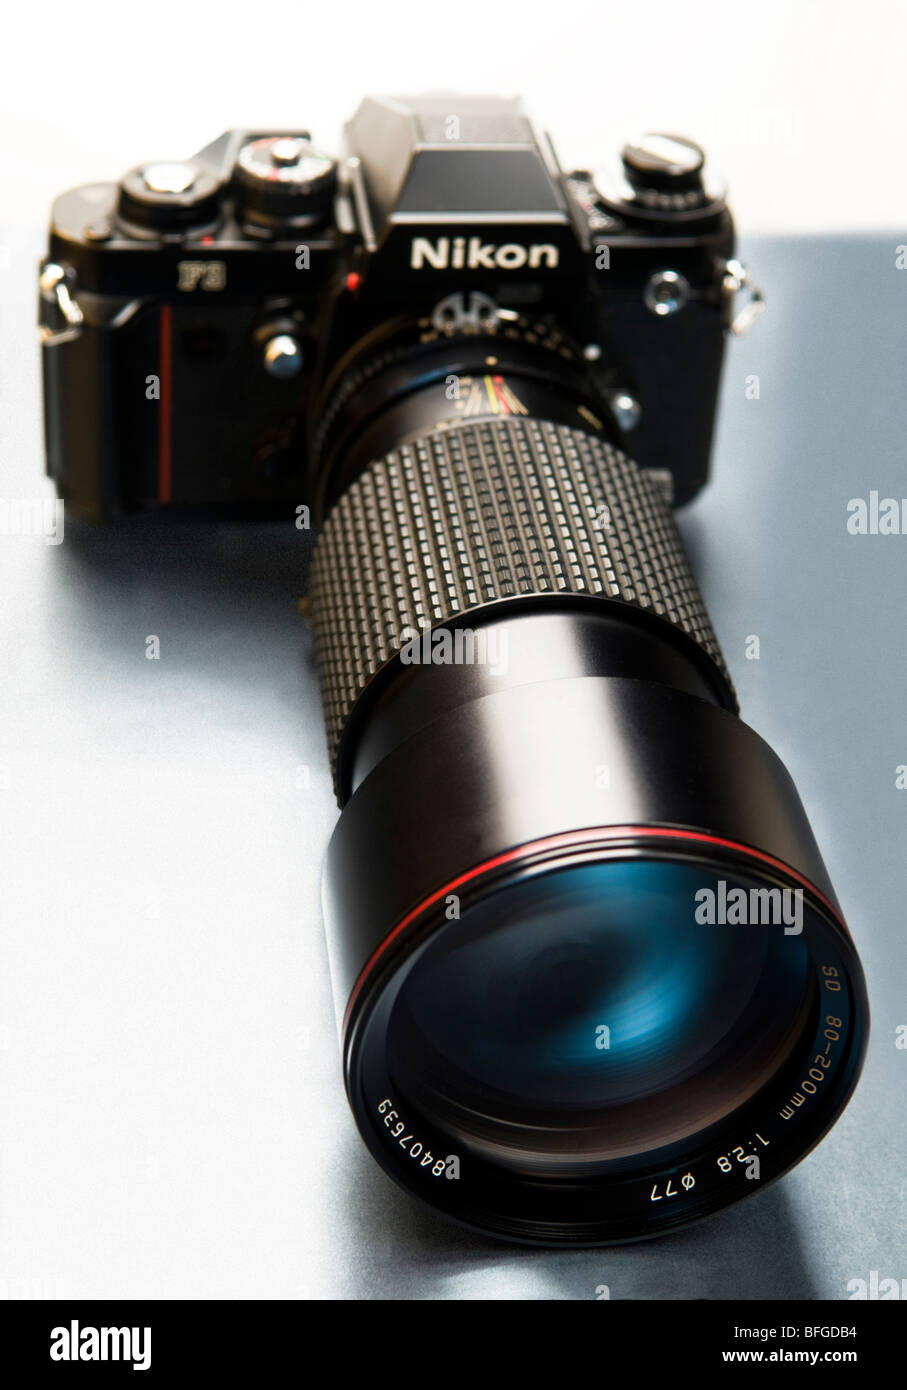 Una visión artística de una cámara Nikon F3 con un lente largo conectado. Foto de stock